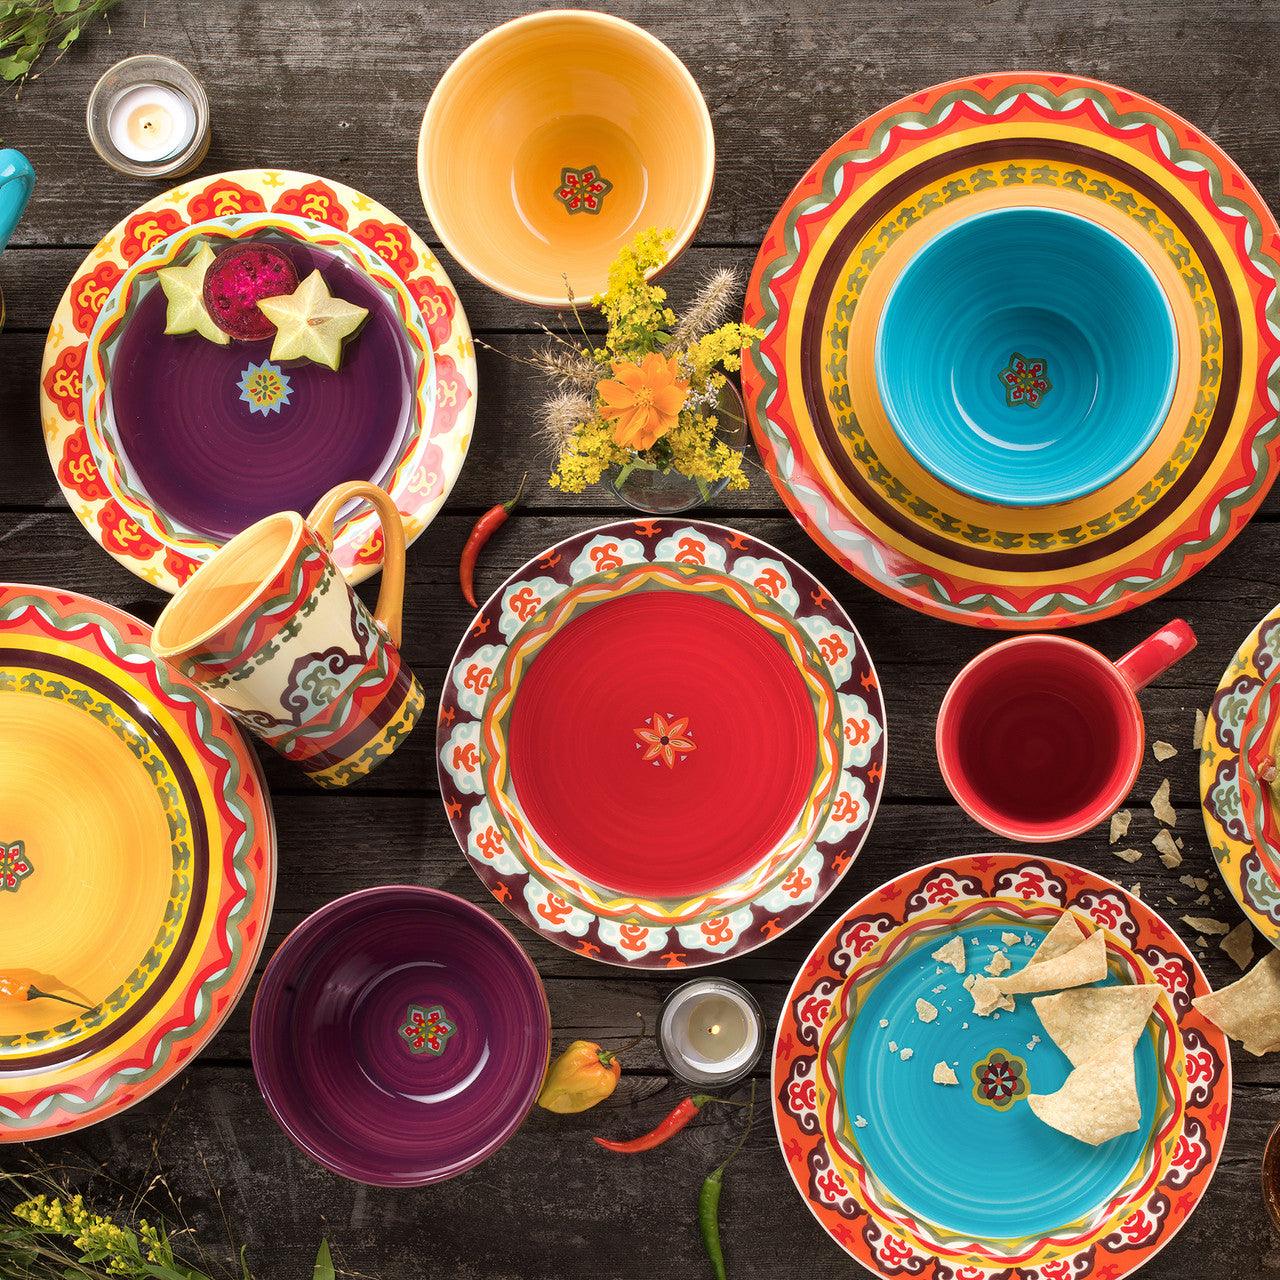 Galicia 16 Piece Dinnerware Set, Service for 4 - Euro Ceramica 